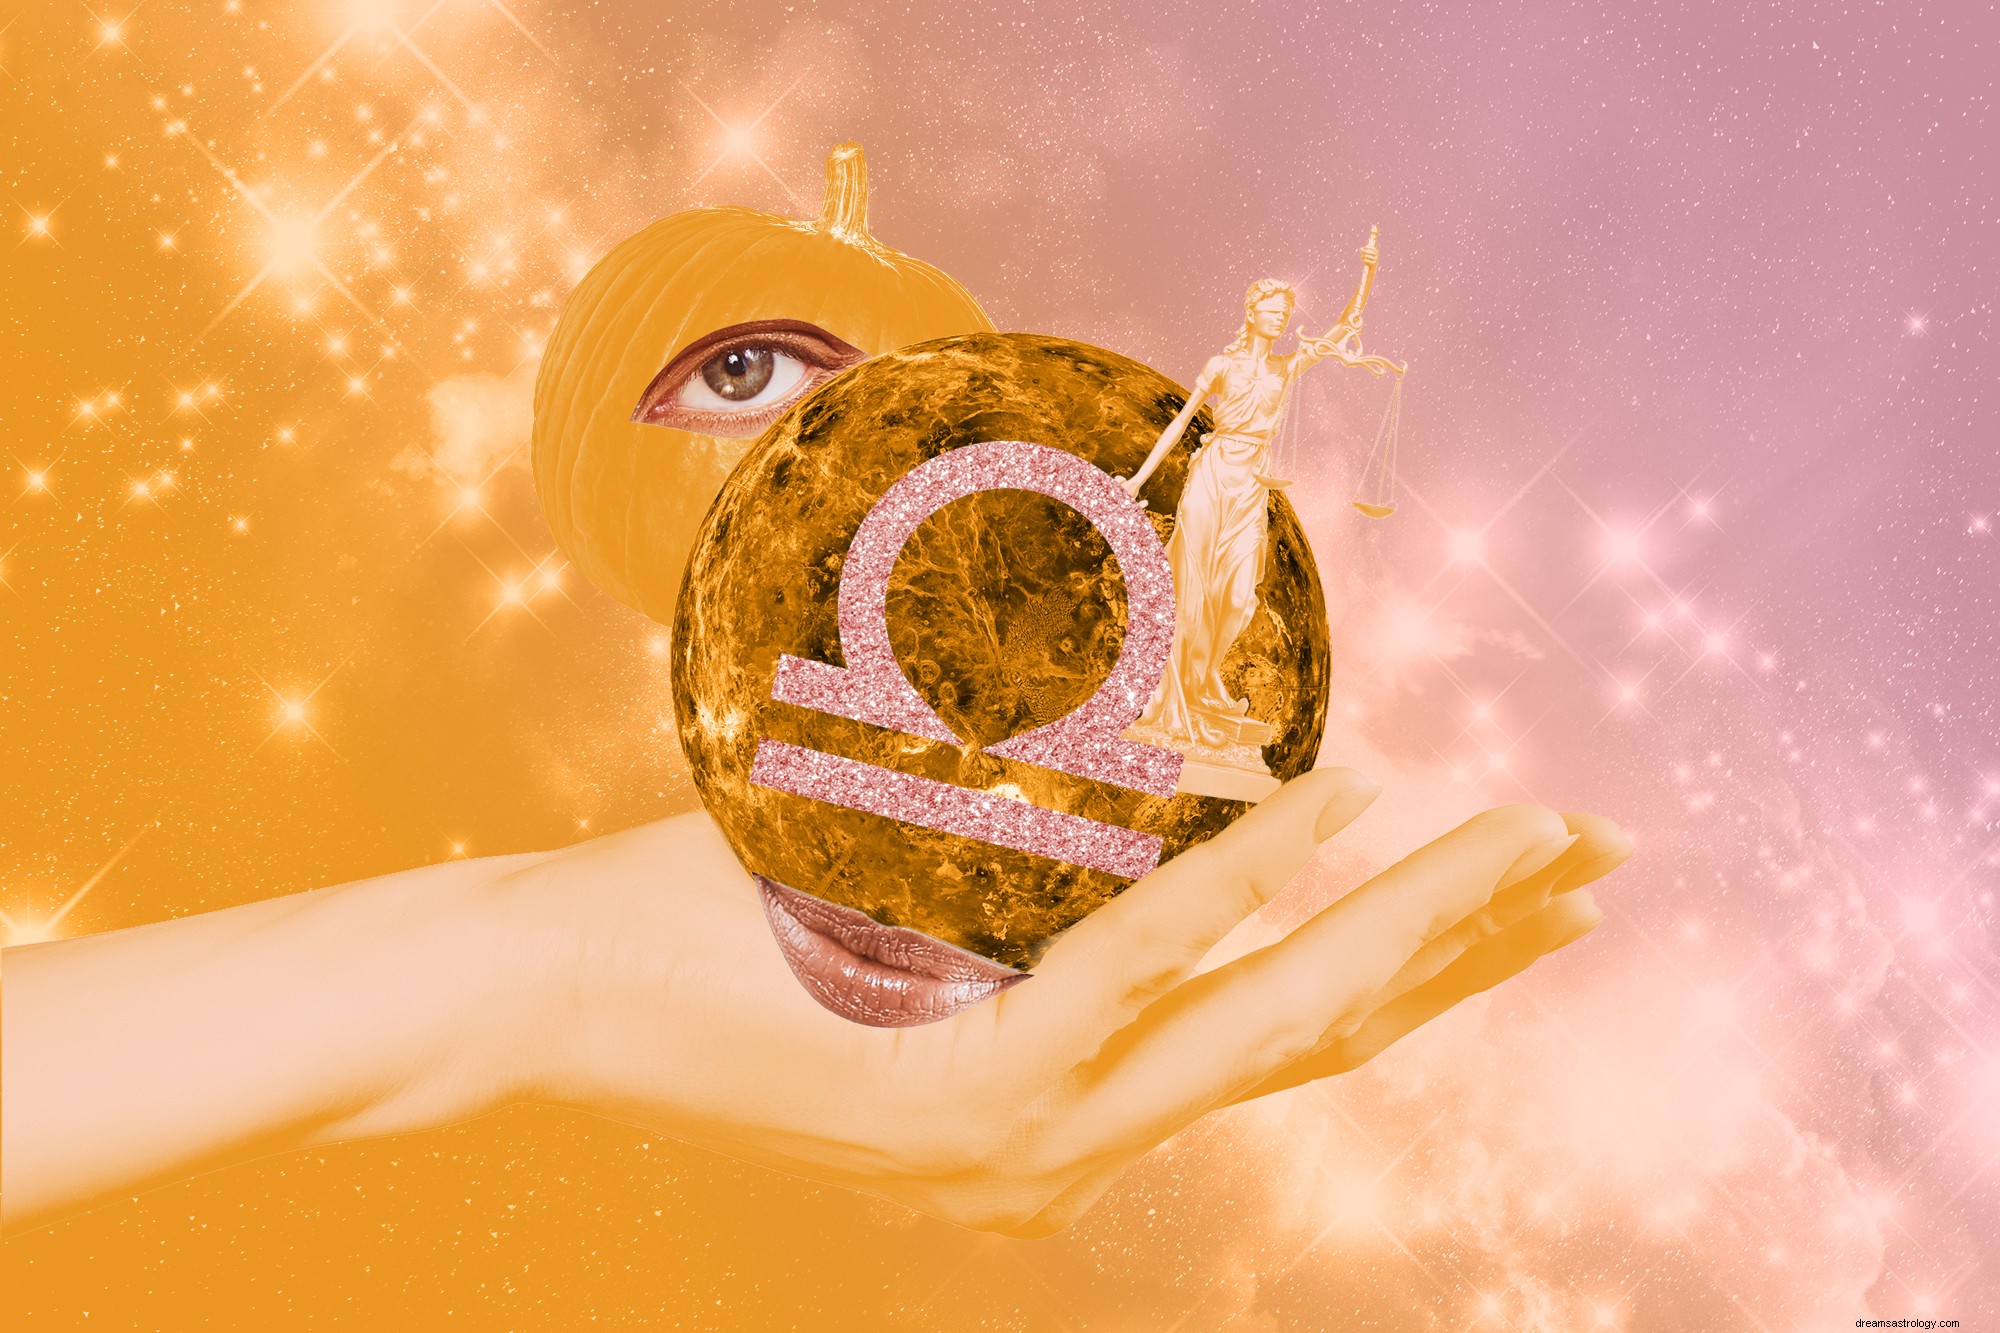 Váš horoskop pro zdraví, lásku a úspěch na říjen 2021 